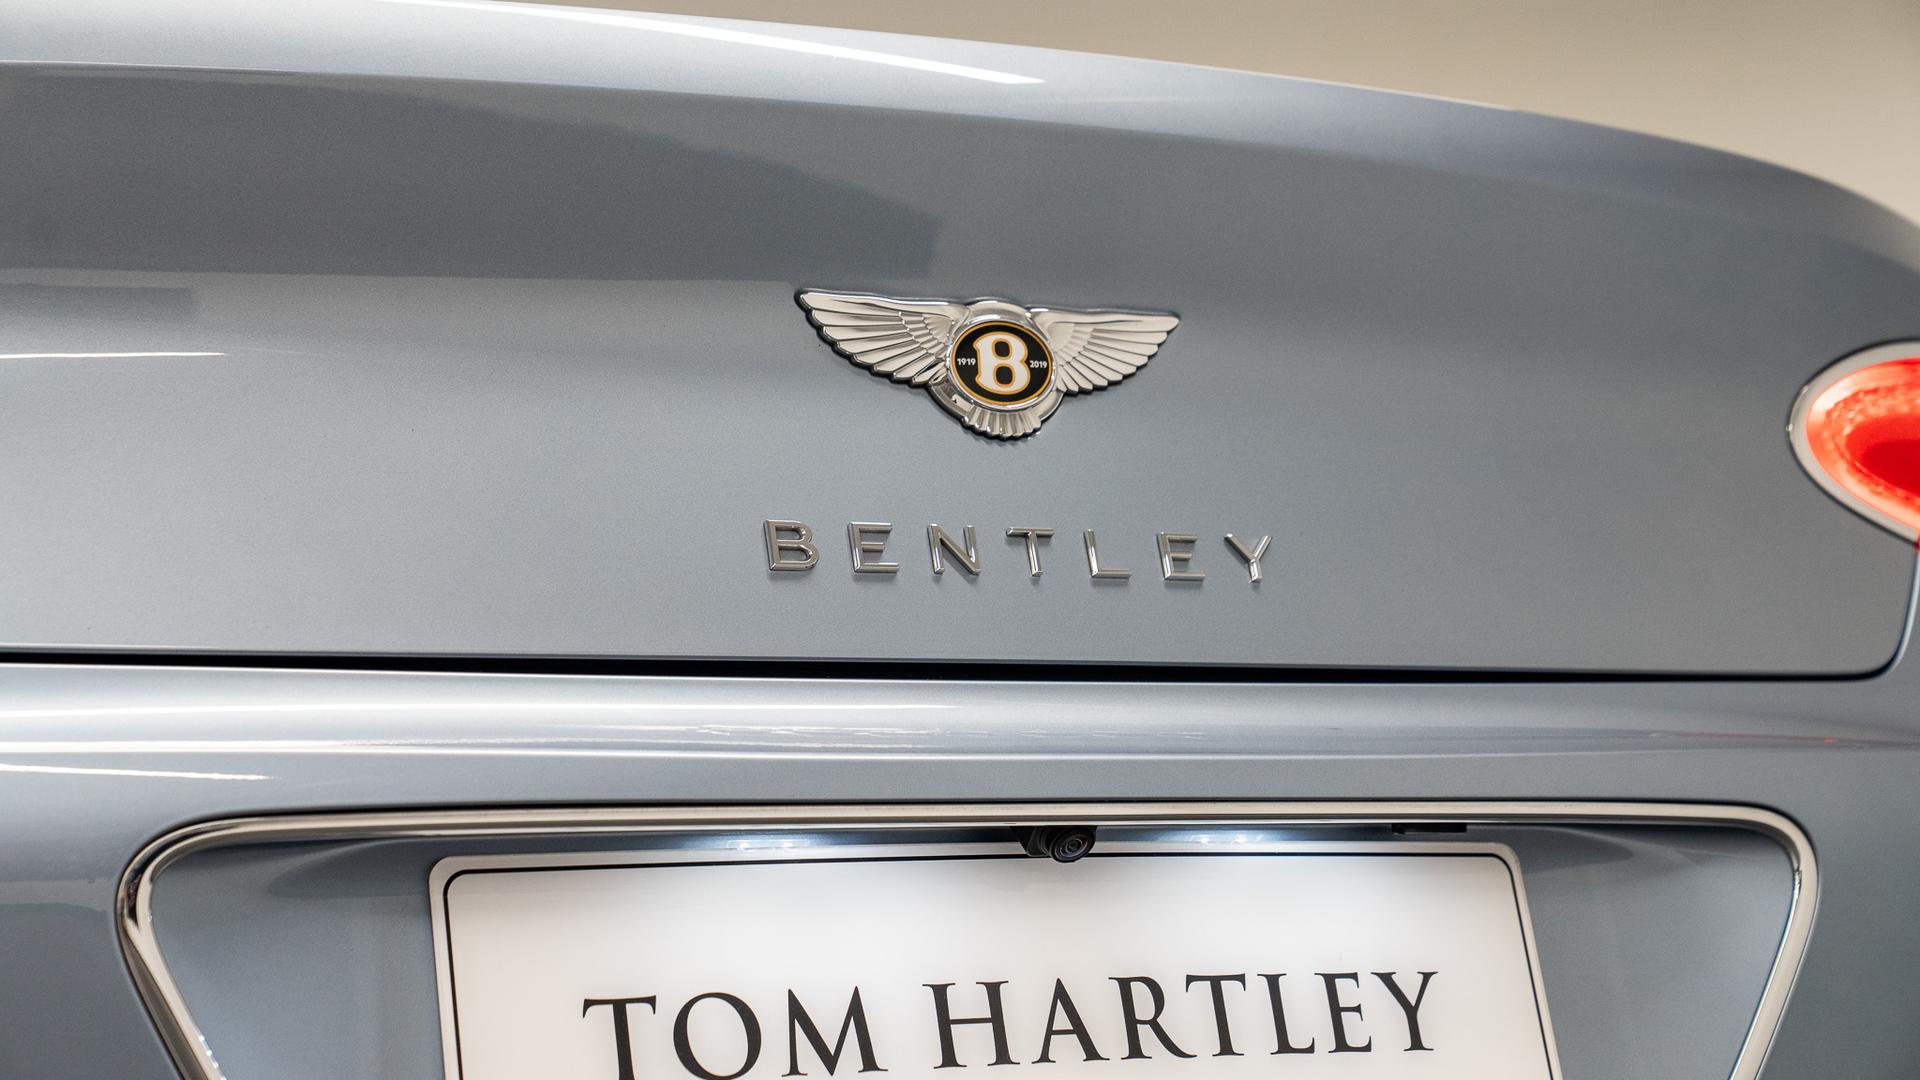 Bentley Continental GTC Photo e73de041-f591-418d-bf95-d1a74b89ad56.jpg